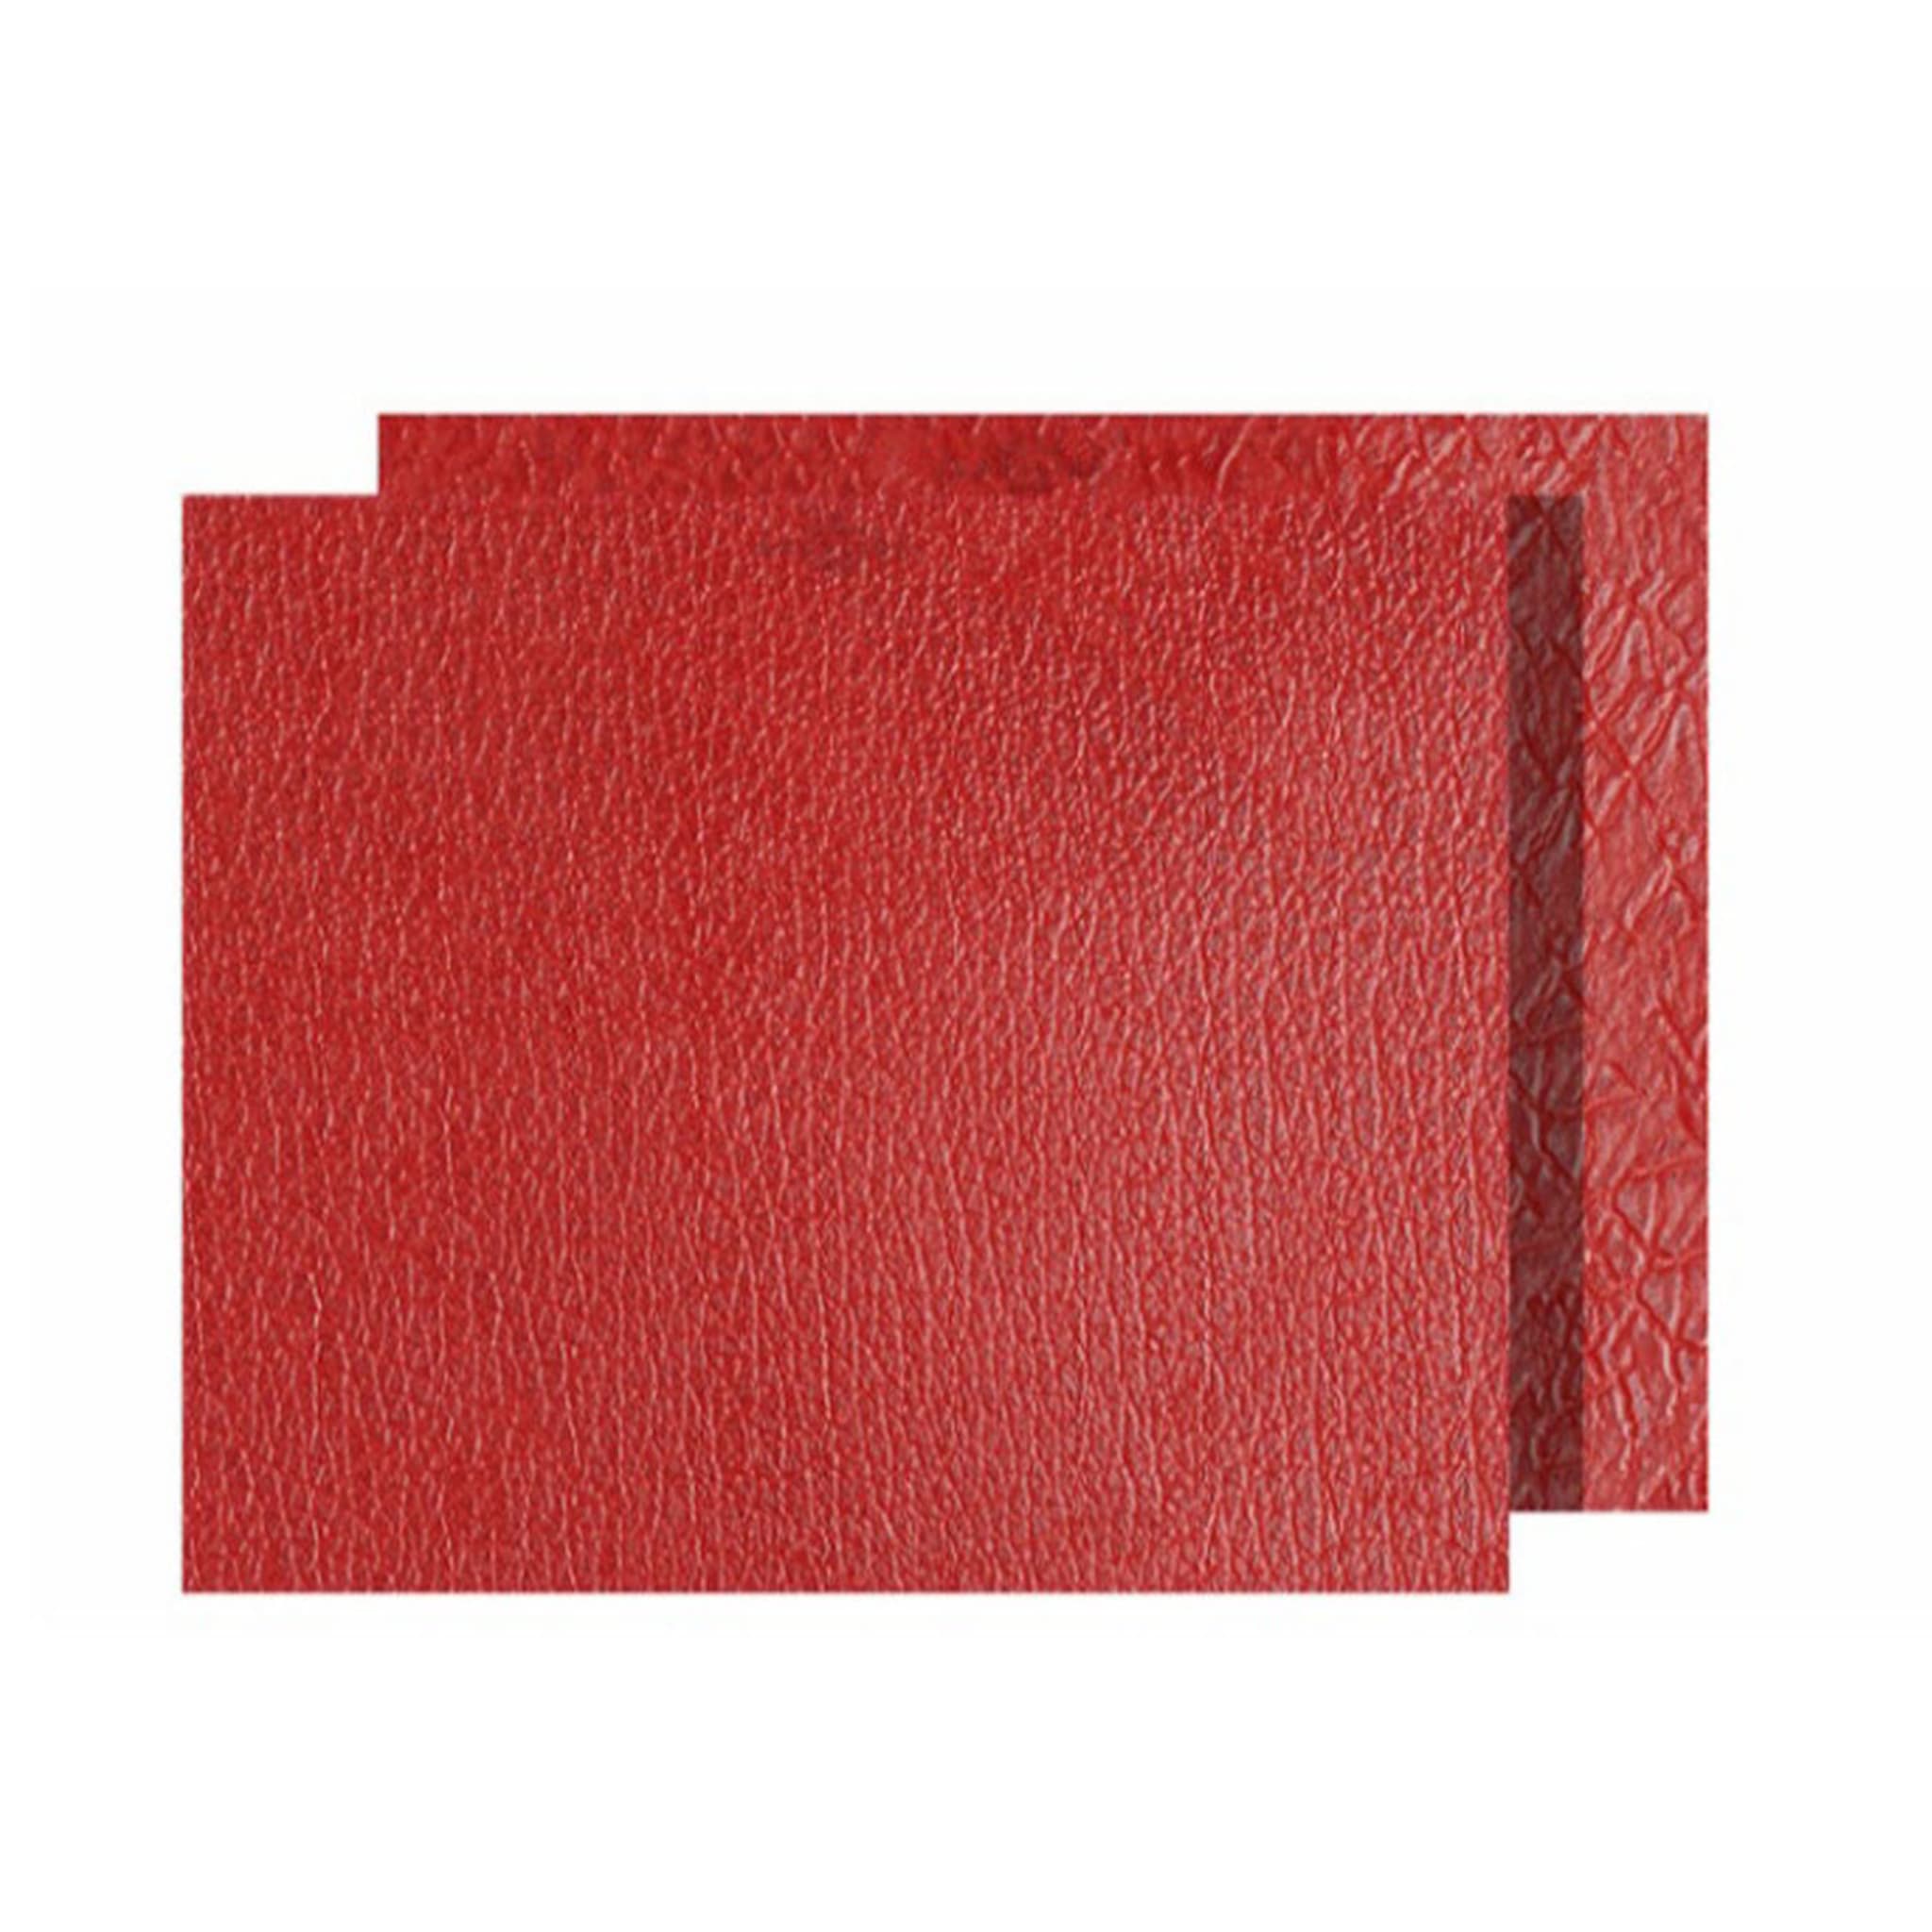 Tanzania Medium Set of 2 Rectangular Red Leather Placemats - Main view